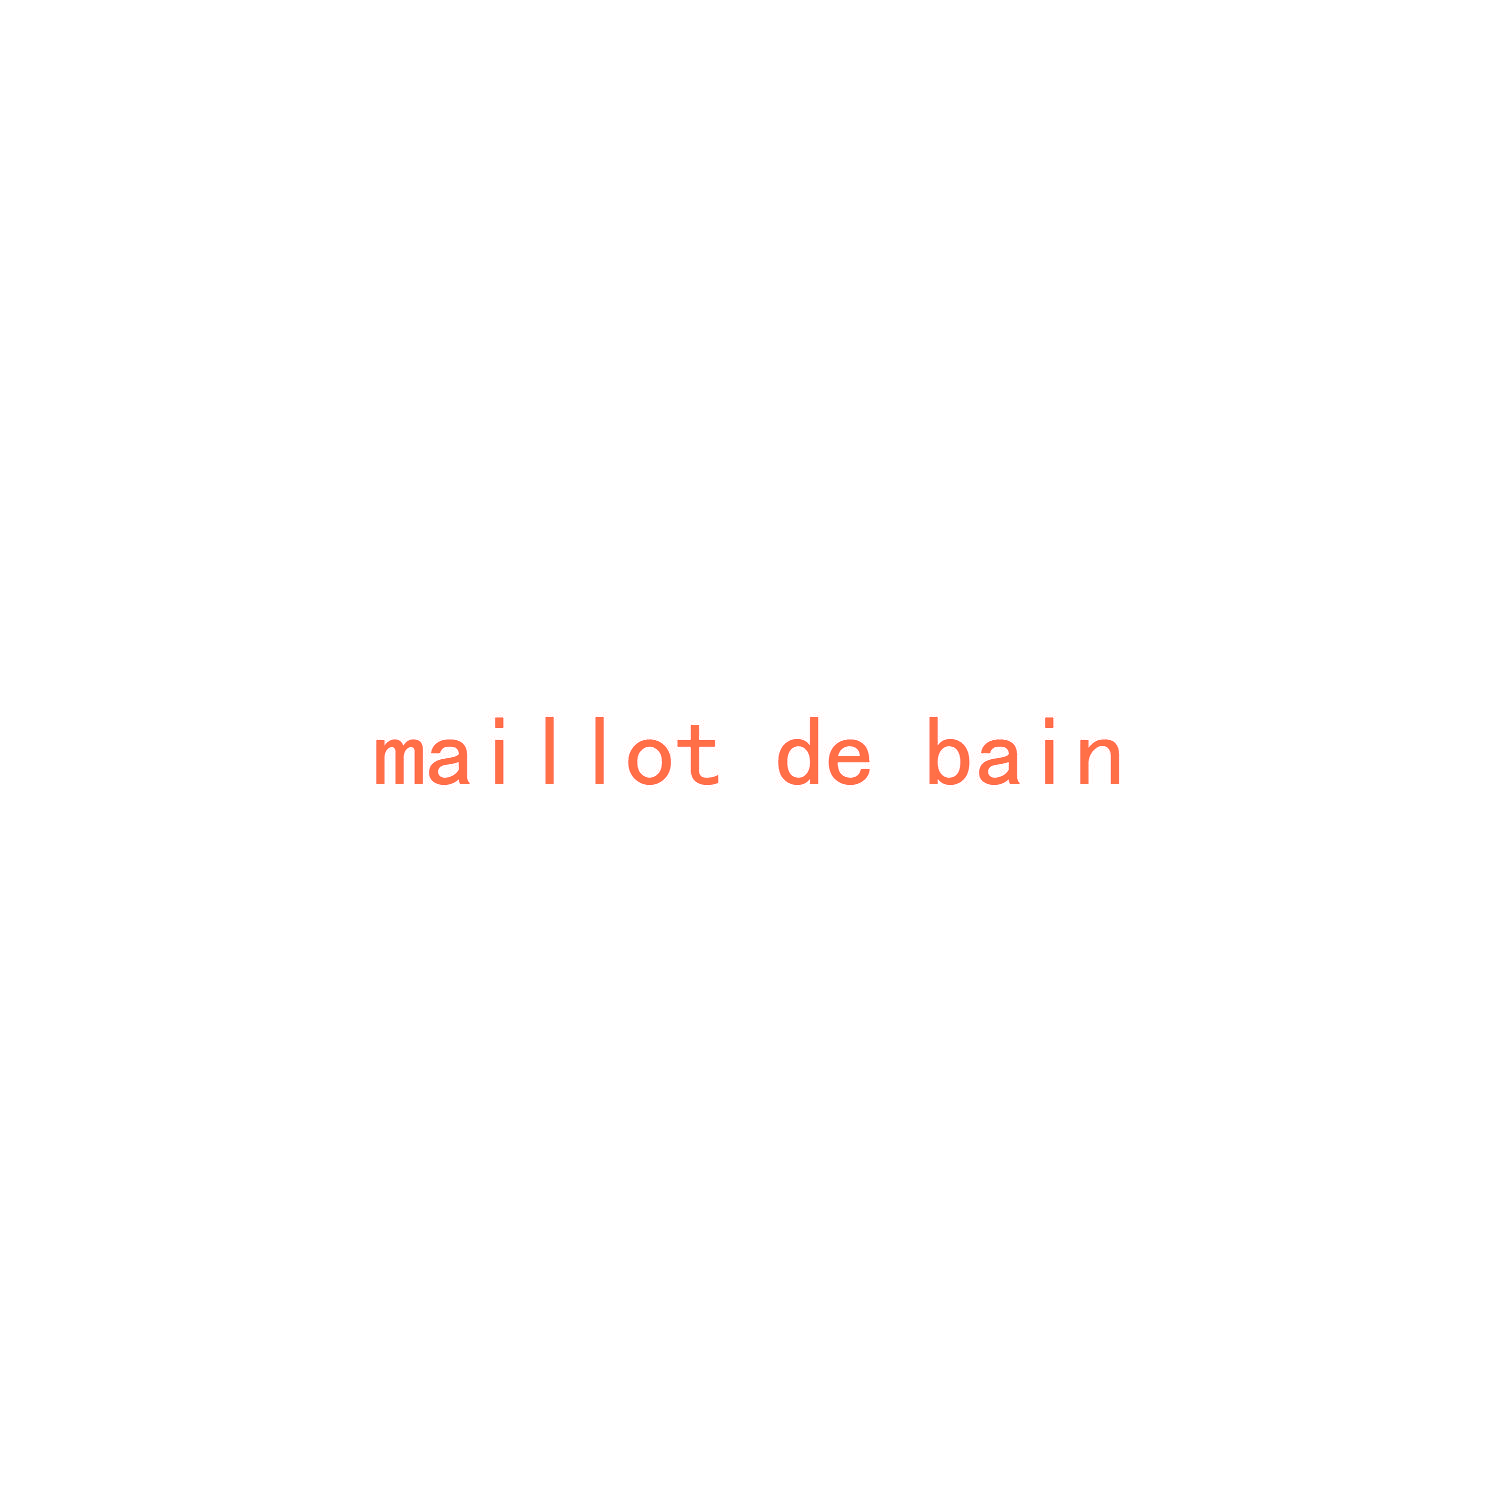 MAILLOT DE BAIN